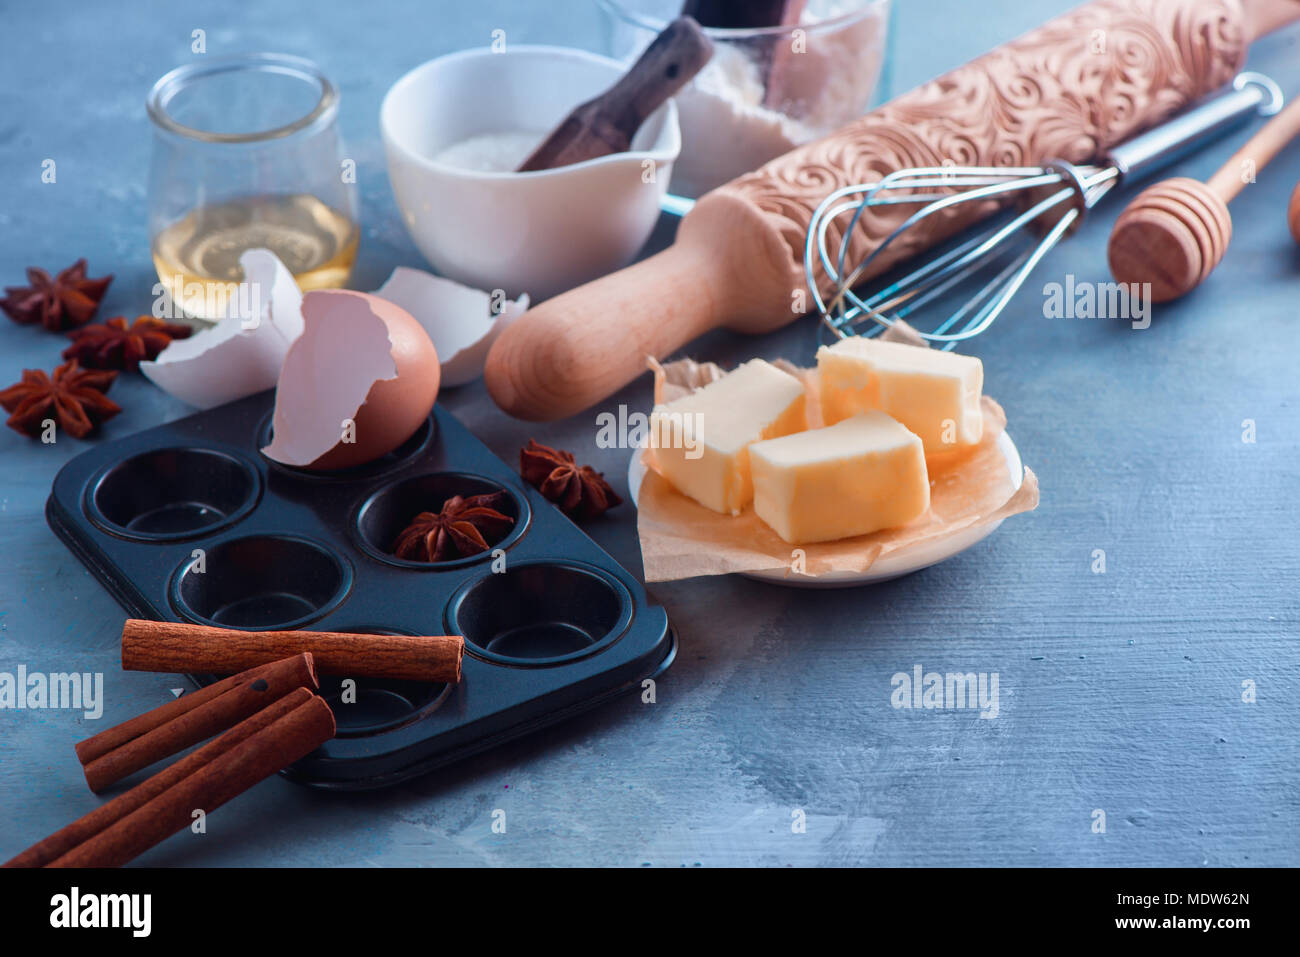 Concetto di cucina a vista con gli strumenti di cottura e gli ingredienti. Un matterello, cucchiai di miele, un muffin tin, una frusta, farina, buter e guscio delle uova su un sfondo di calcestruzzo con copia spazio. Foto Stock